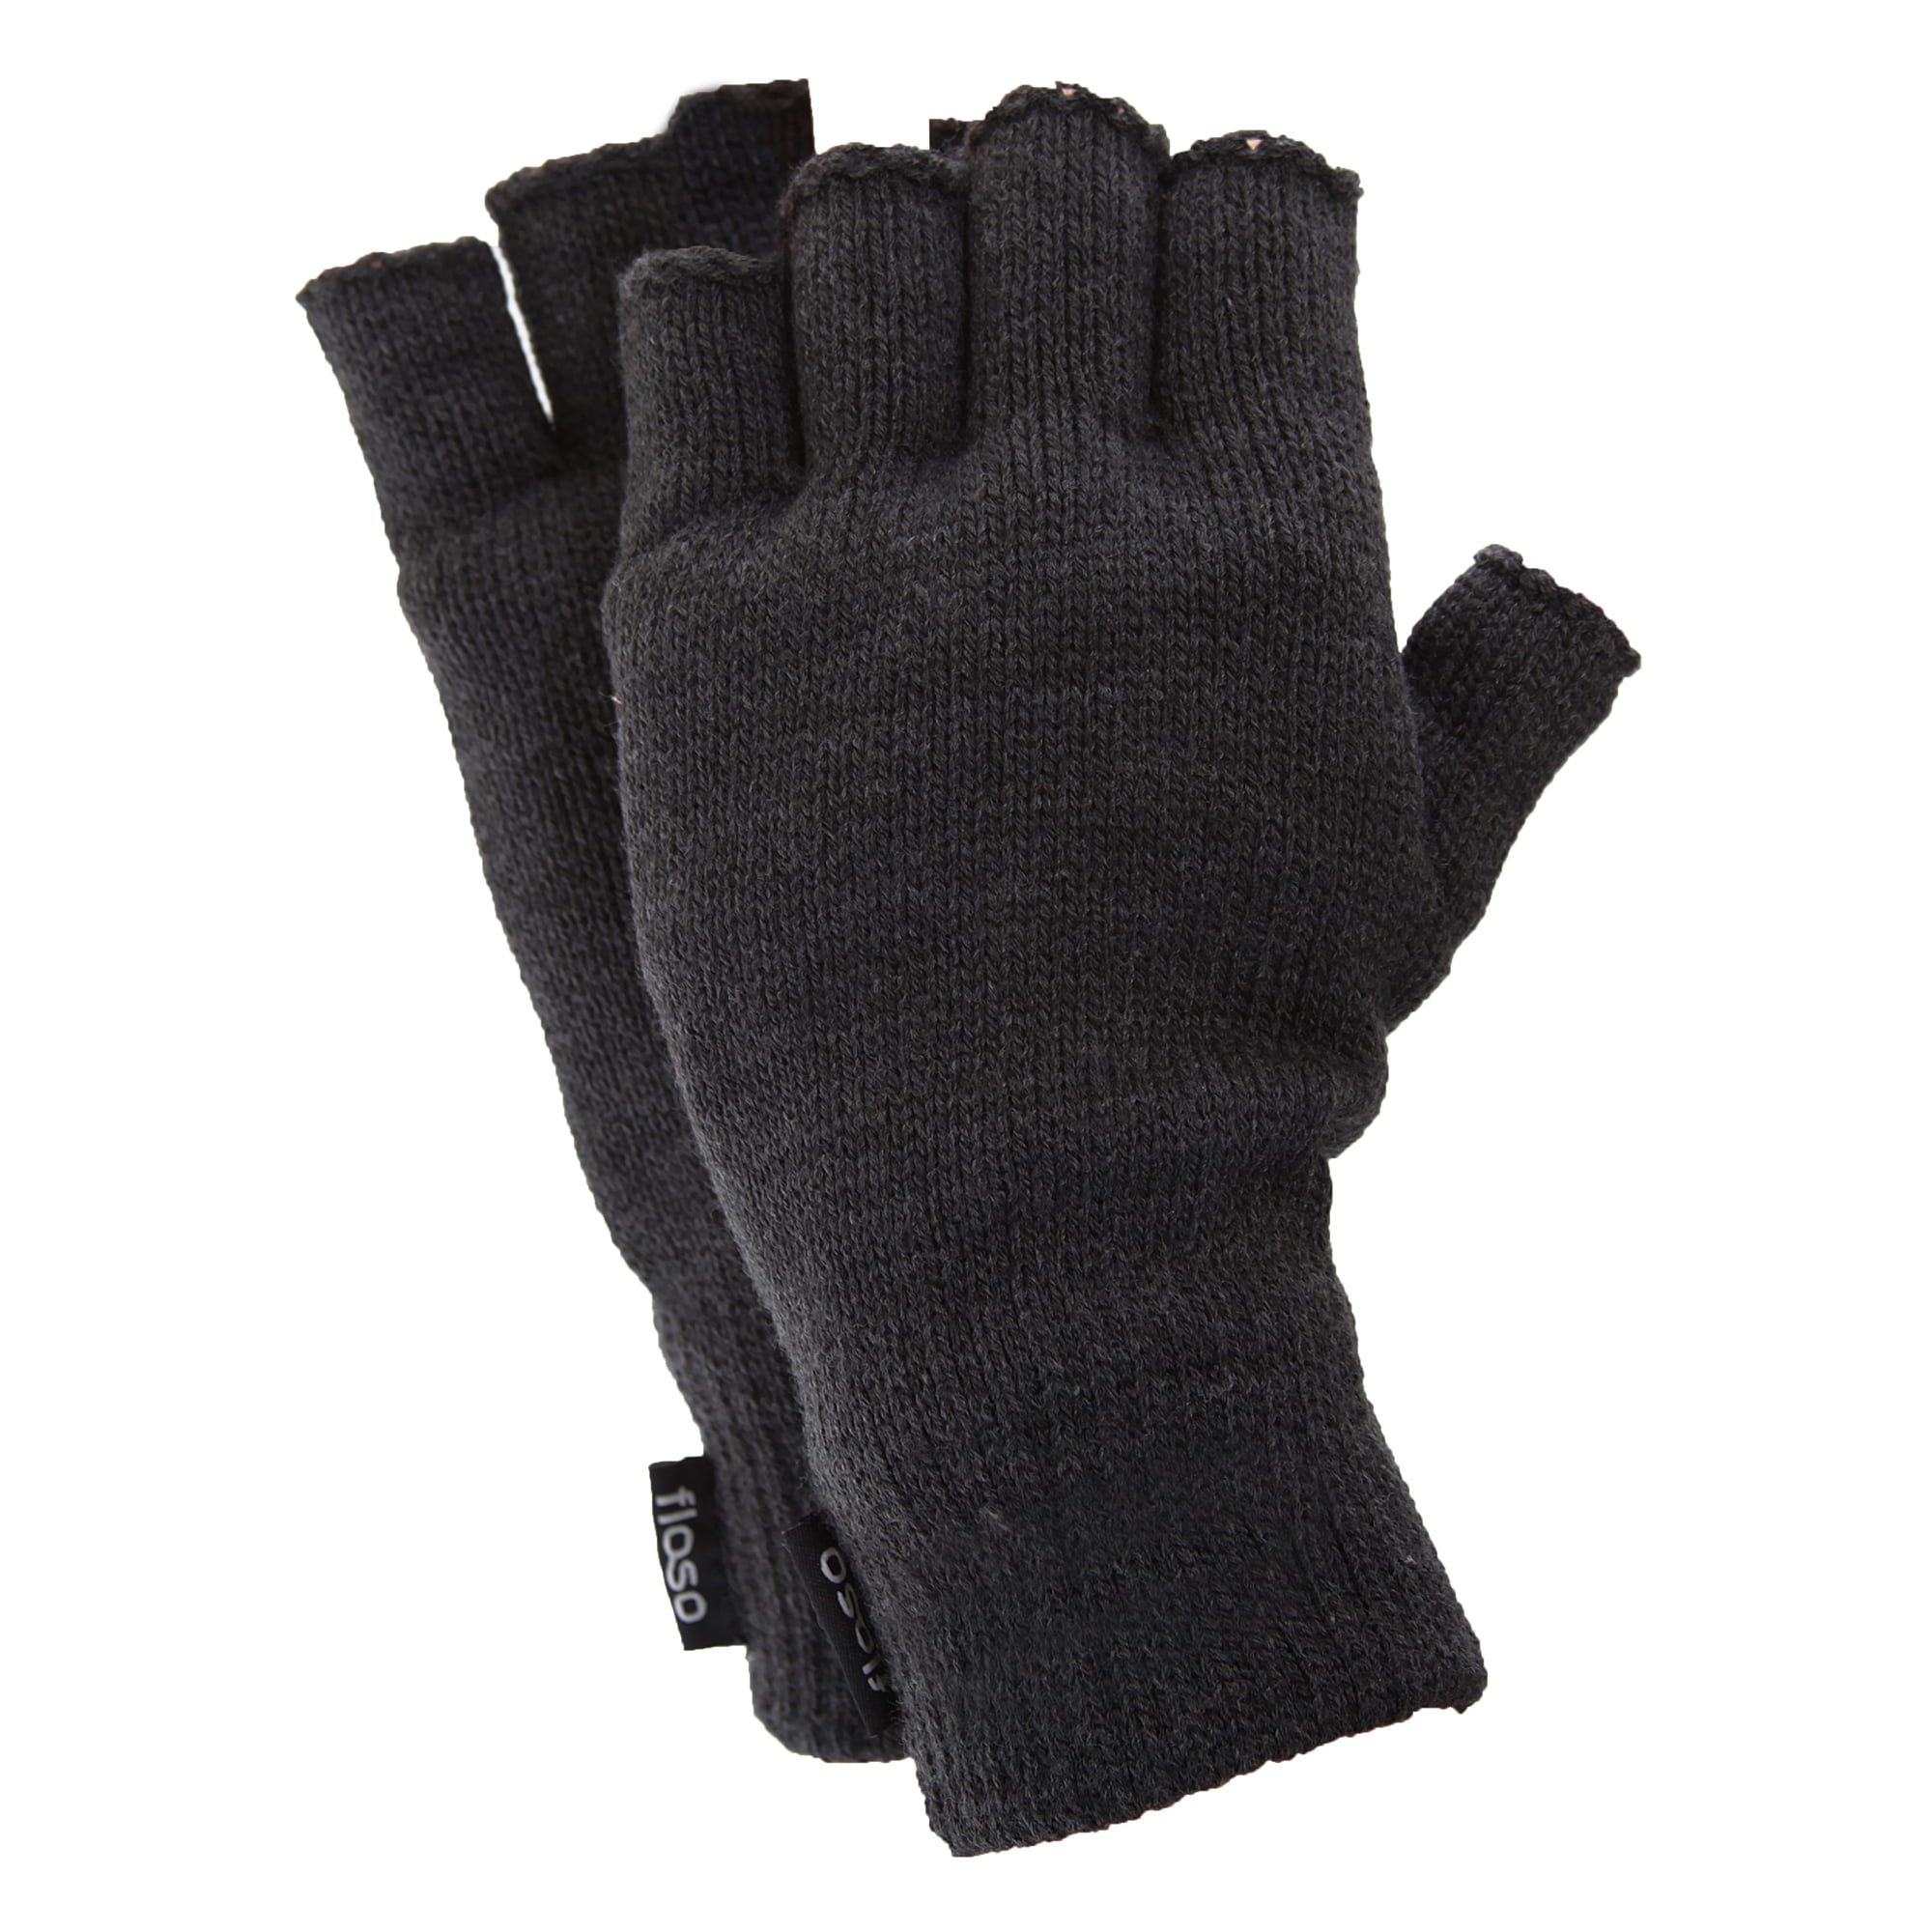 Striker ICE 407005 Second Skin Glove 